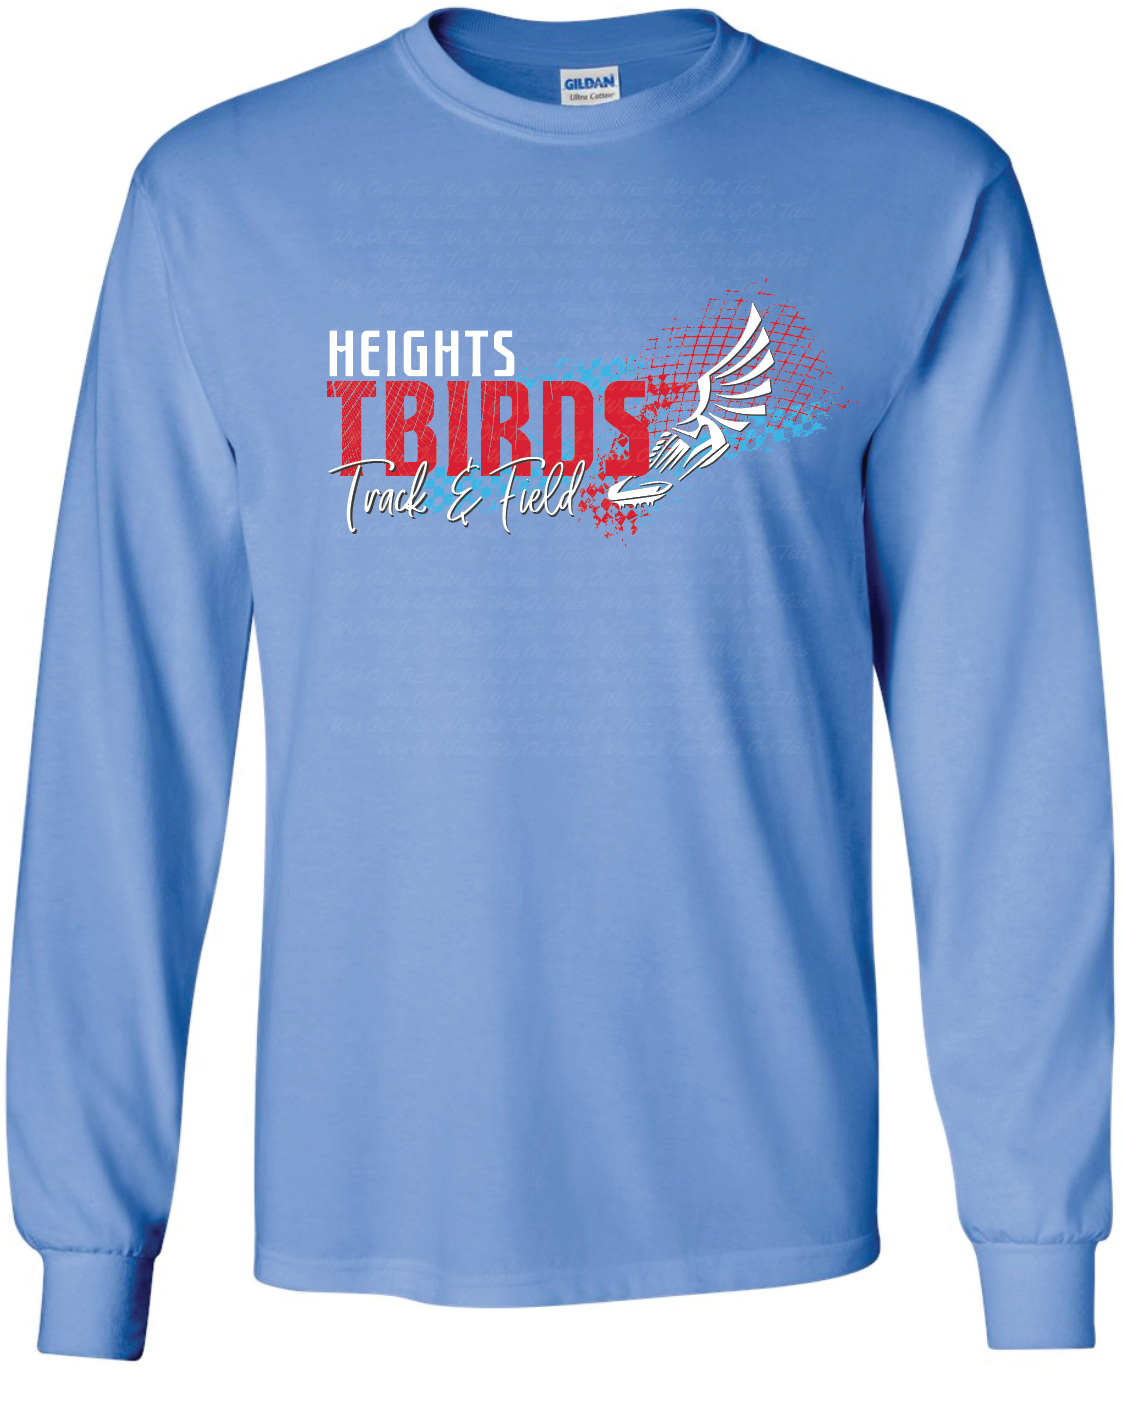 Tbirds Track & Field Gildan Ultra Cotton Long Sleeve T-Shirt